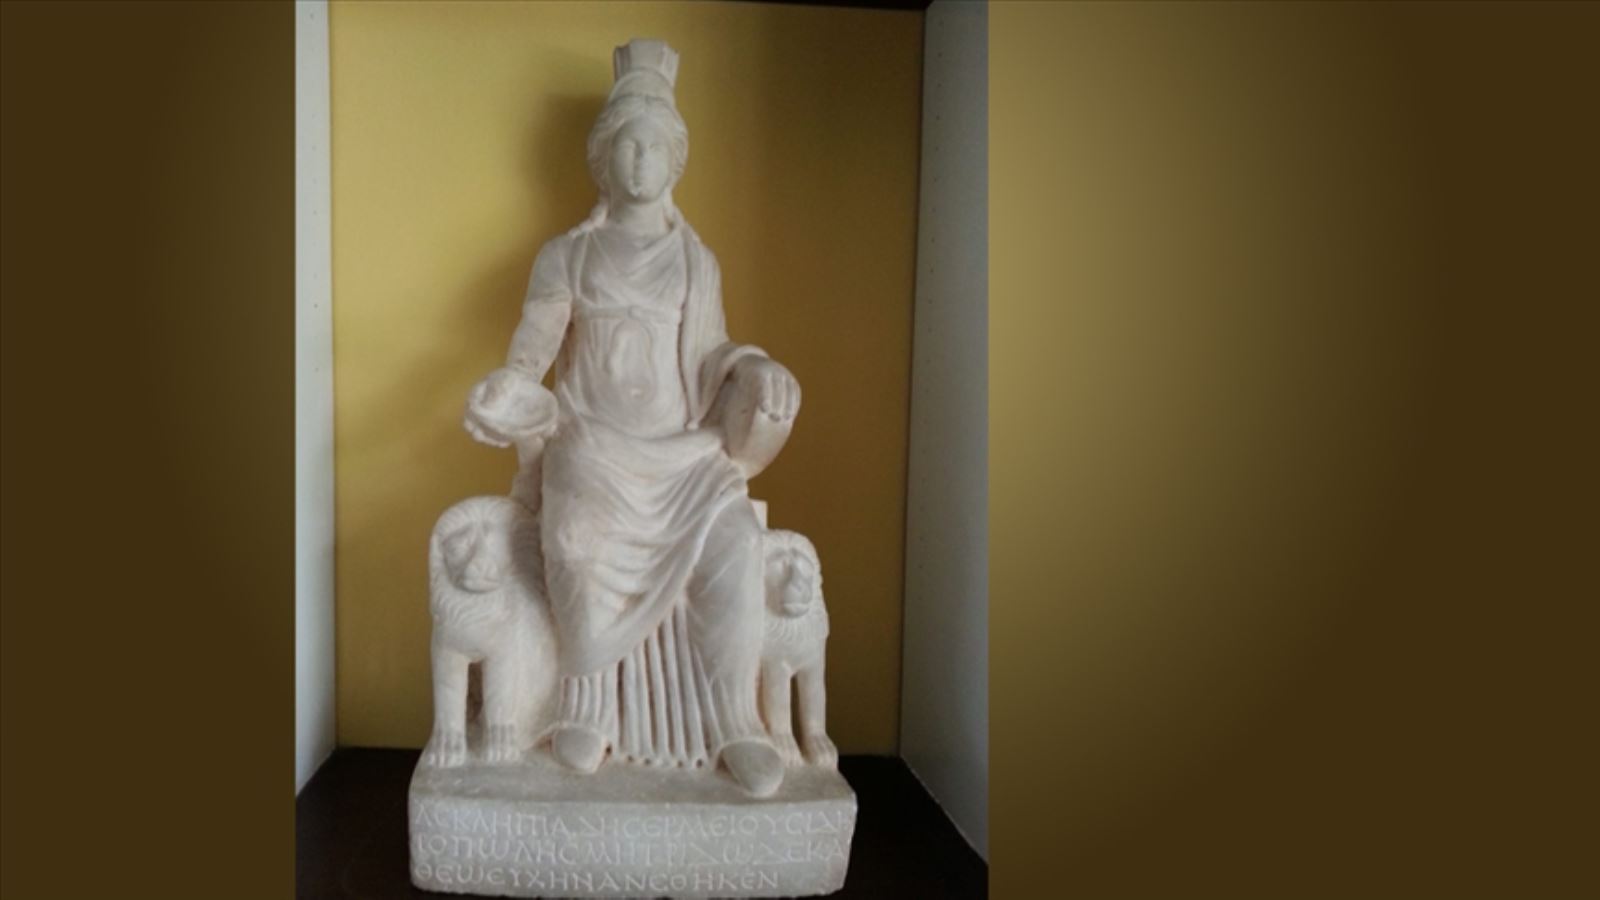 Bin 700 yıllık Ana Tanrıça Kybele heykeli 60 yıldan sonra doğduğu topraklarda